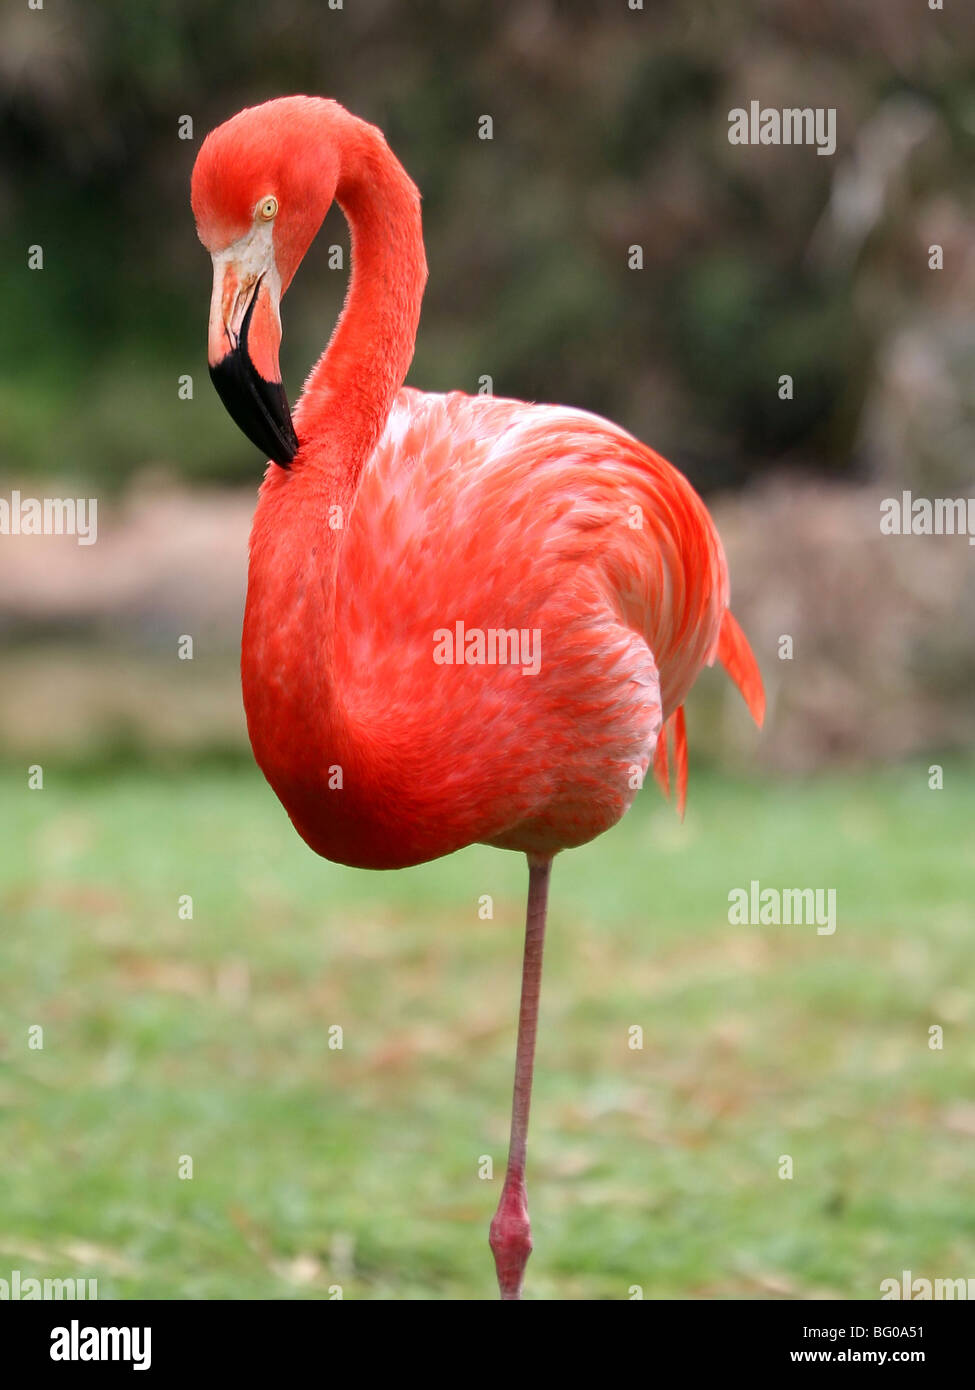 rosa Flamingo auf einem Bein stehen Stockfotografie - Alamy